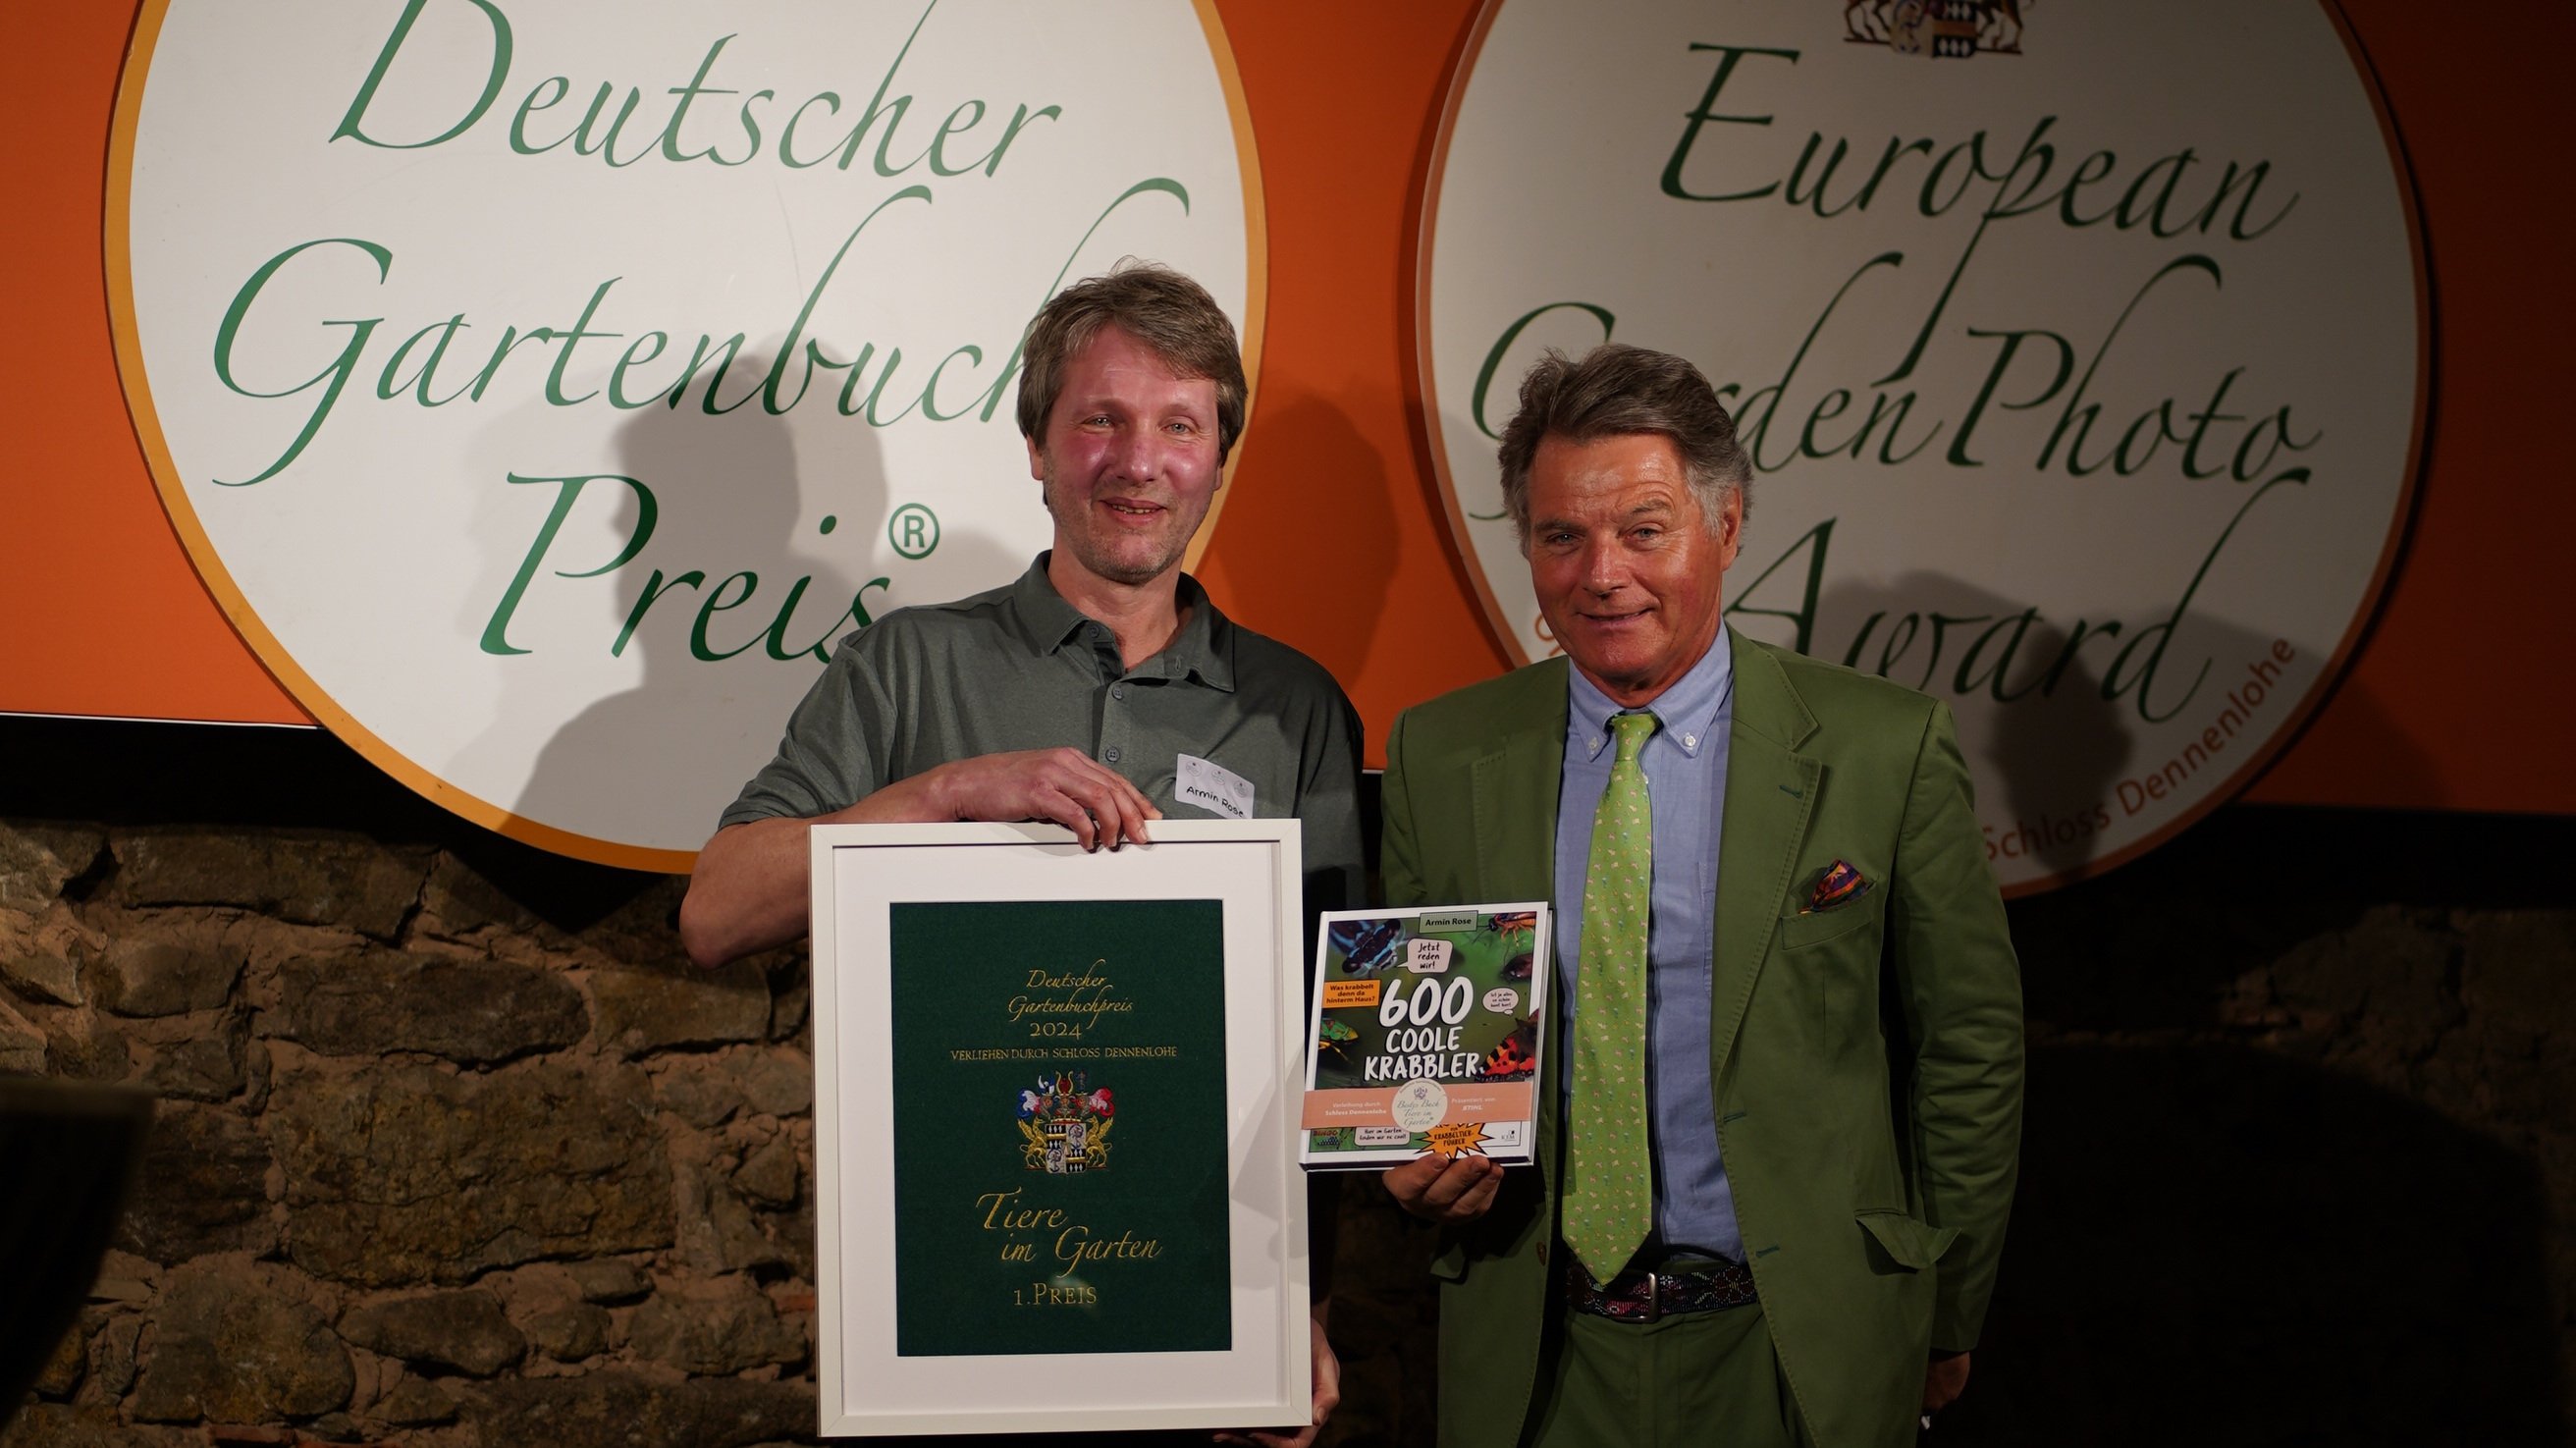 Unser Kollege Armin Rose (links) mit Robert von Süsskind bei der Preisverleihung des Deutschen Gartenbuchpreises auf Schloss Dennelohe.